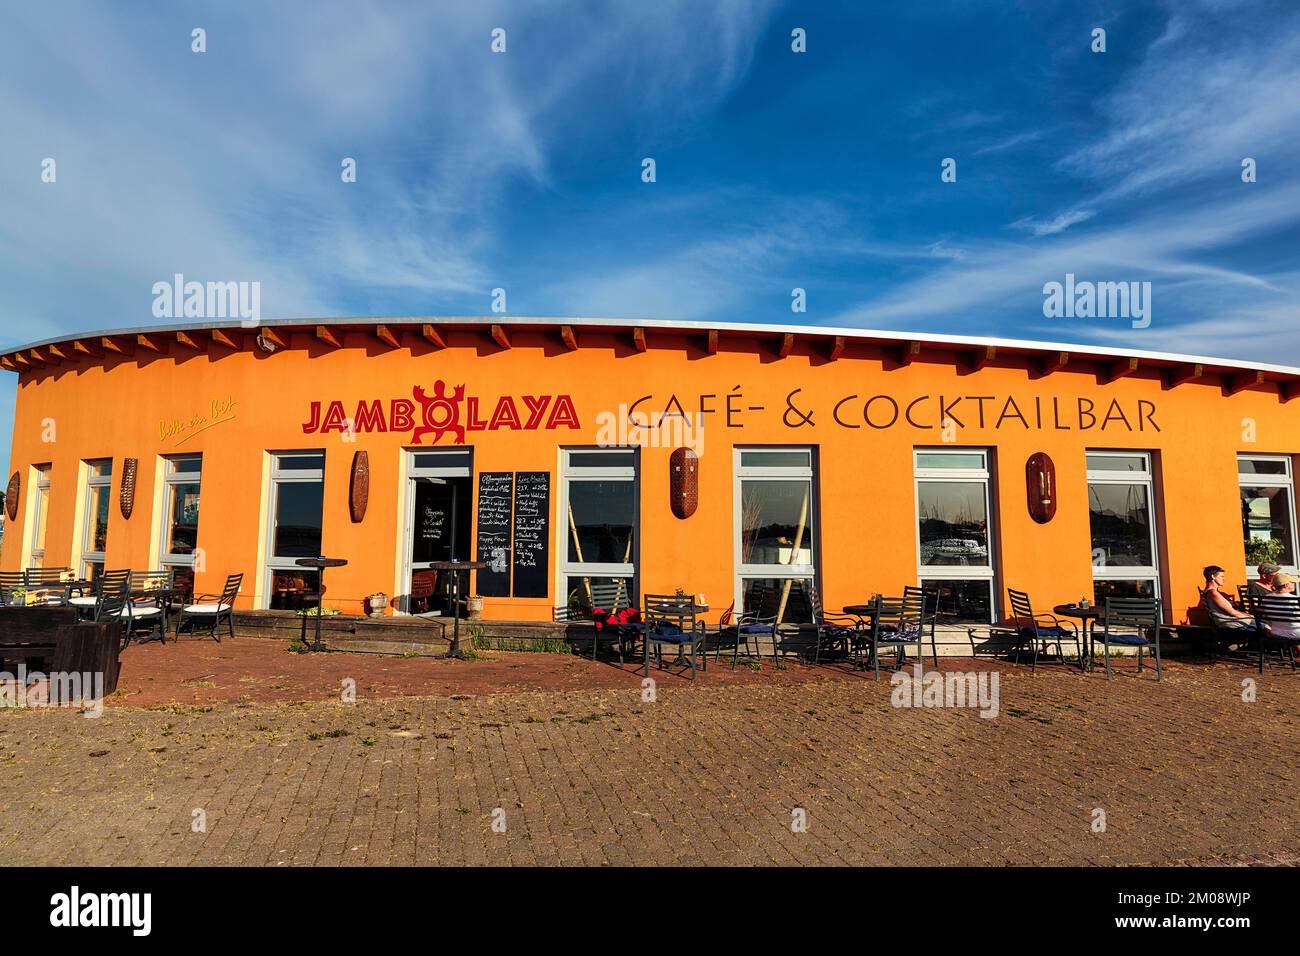 Farbenfrohes Café, Cocktailbar Jambolaya, Galerie, Dekoration mit westafrikanischem Kunsthandwerk im Hafen, Barth, Deutschland, Europa Stockfoto